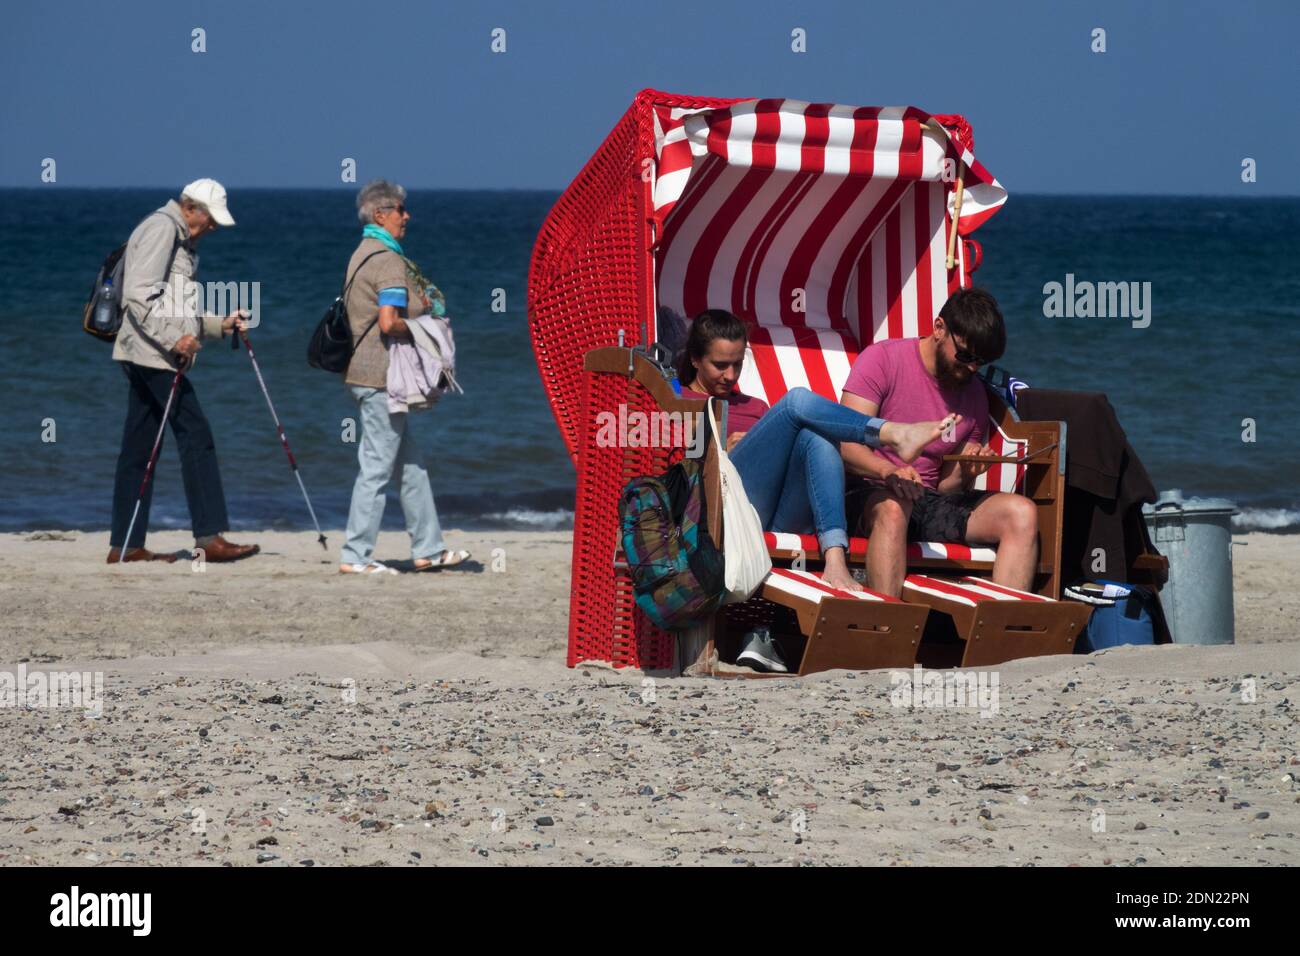 Un jeune couple dans une chaise de plage et un couple senior marchant sur une plage Allemagne mer Baltique, un jeune couple vieux Banque D'Images